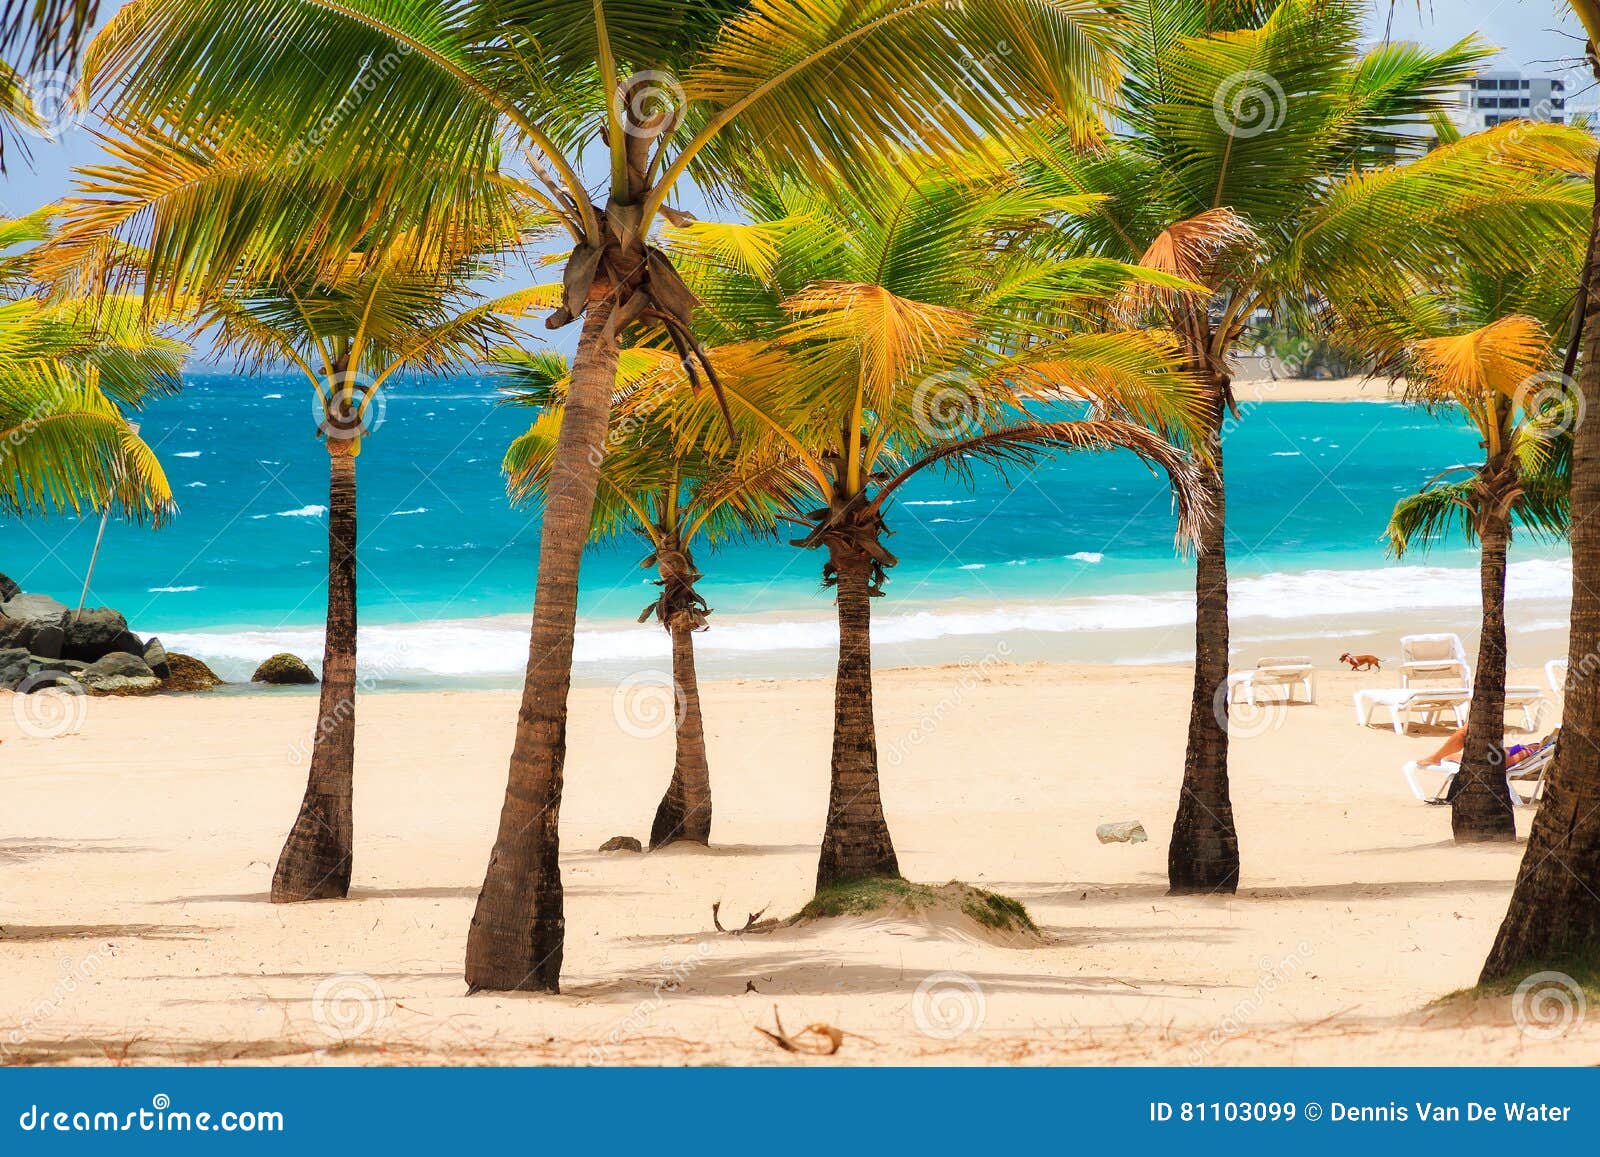 condado palm beach